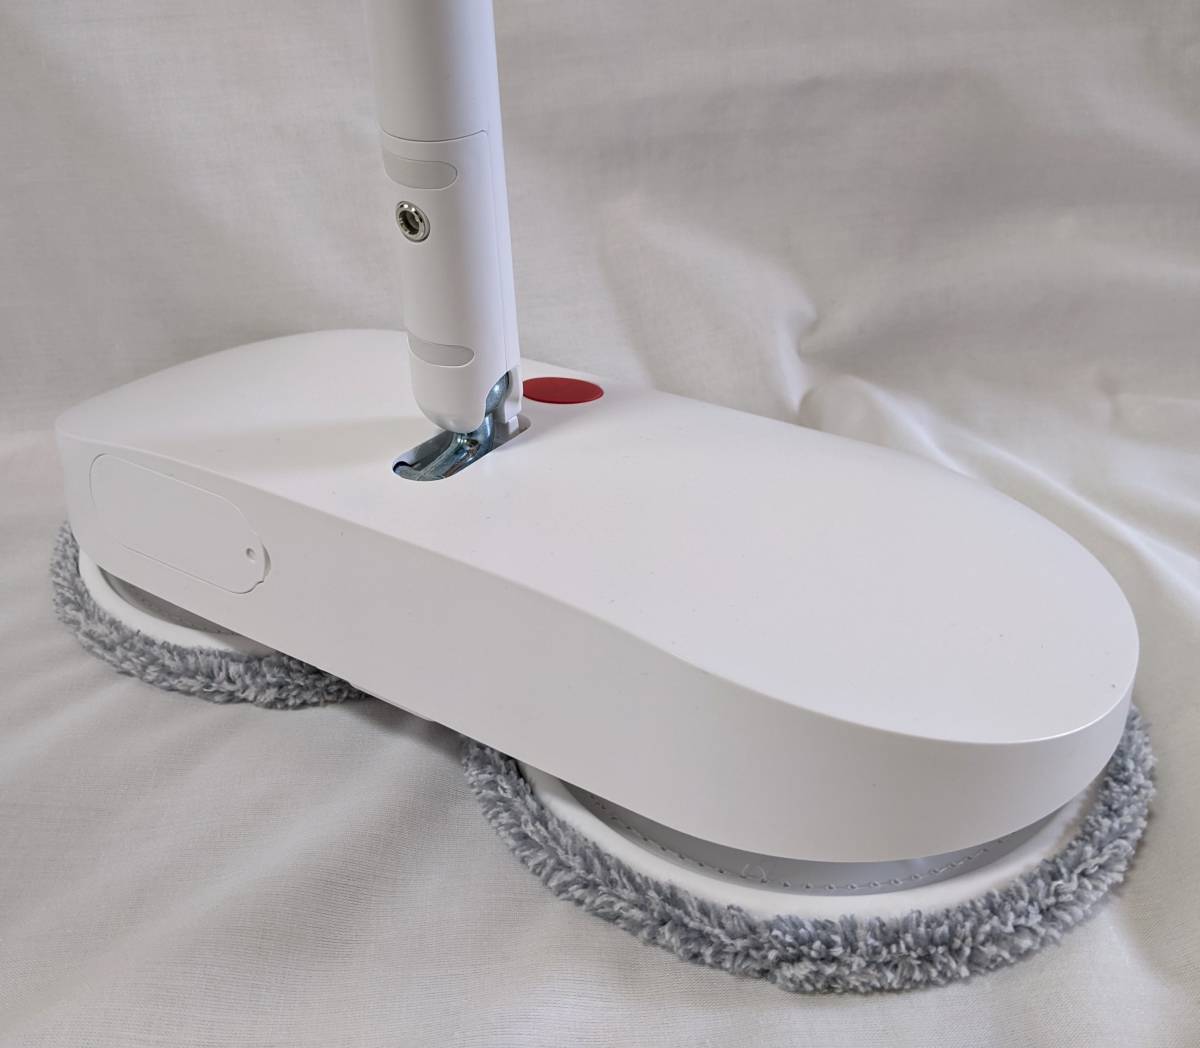 【1円出品】CLEAN HOME SMART FLOOR CLEANER 手持ち無線電動モップ 自動洗浄機能 コードレス 回転モップクリーナー フローリング掃除_画像4